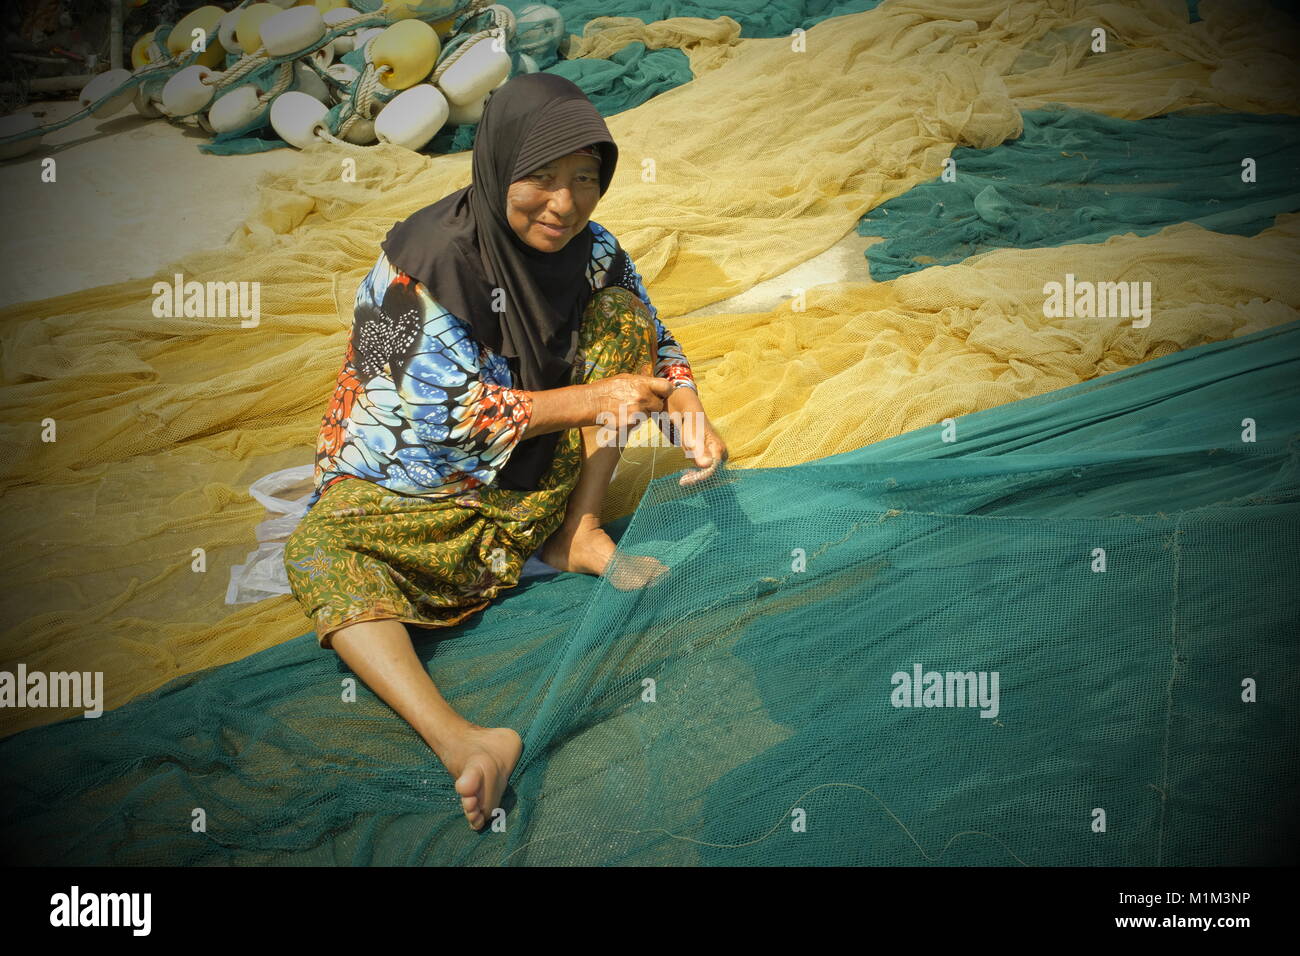 Locali di donne musulmane tessere la rete da pesca a Koh Yao Yai, un isola thailandese nel Mare delle Andamane. 19-Gen-2018 Foto Stock